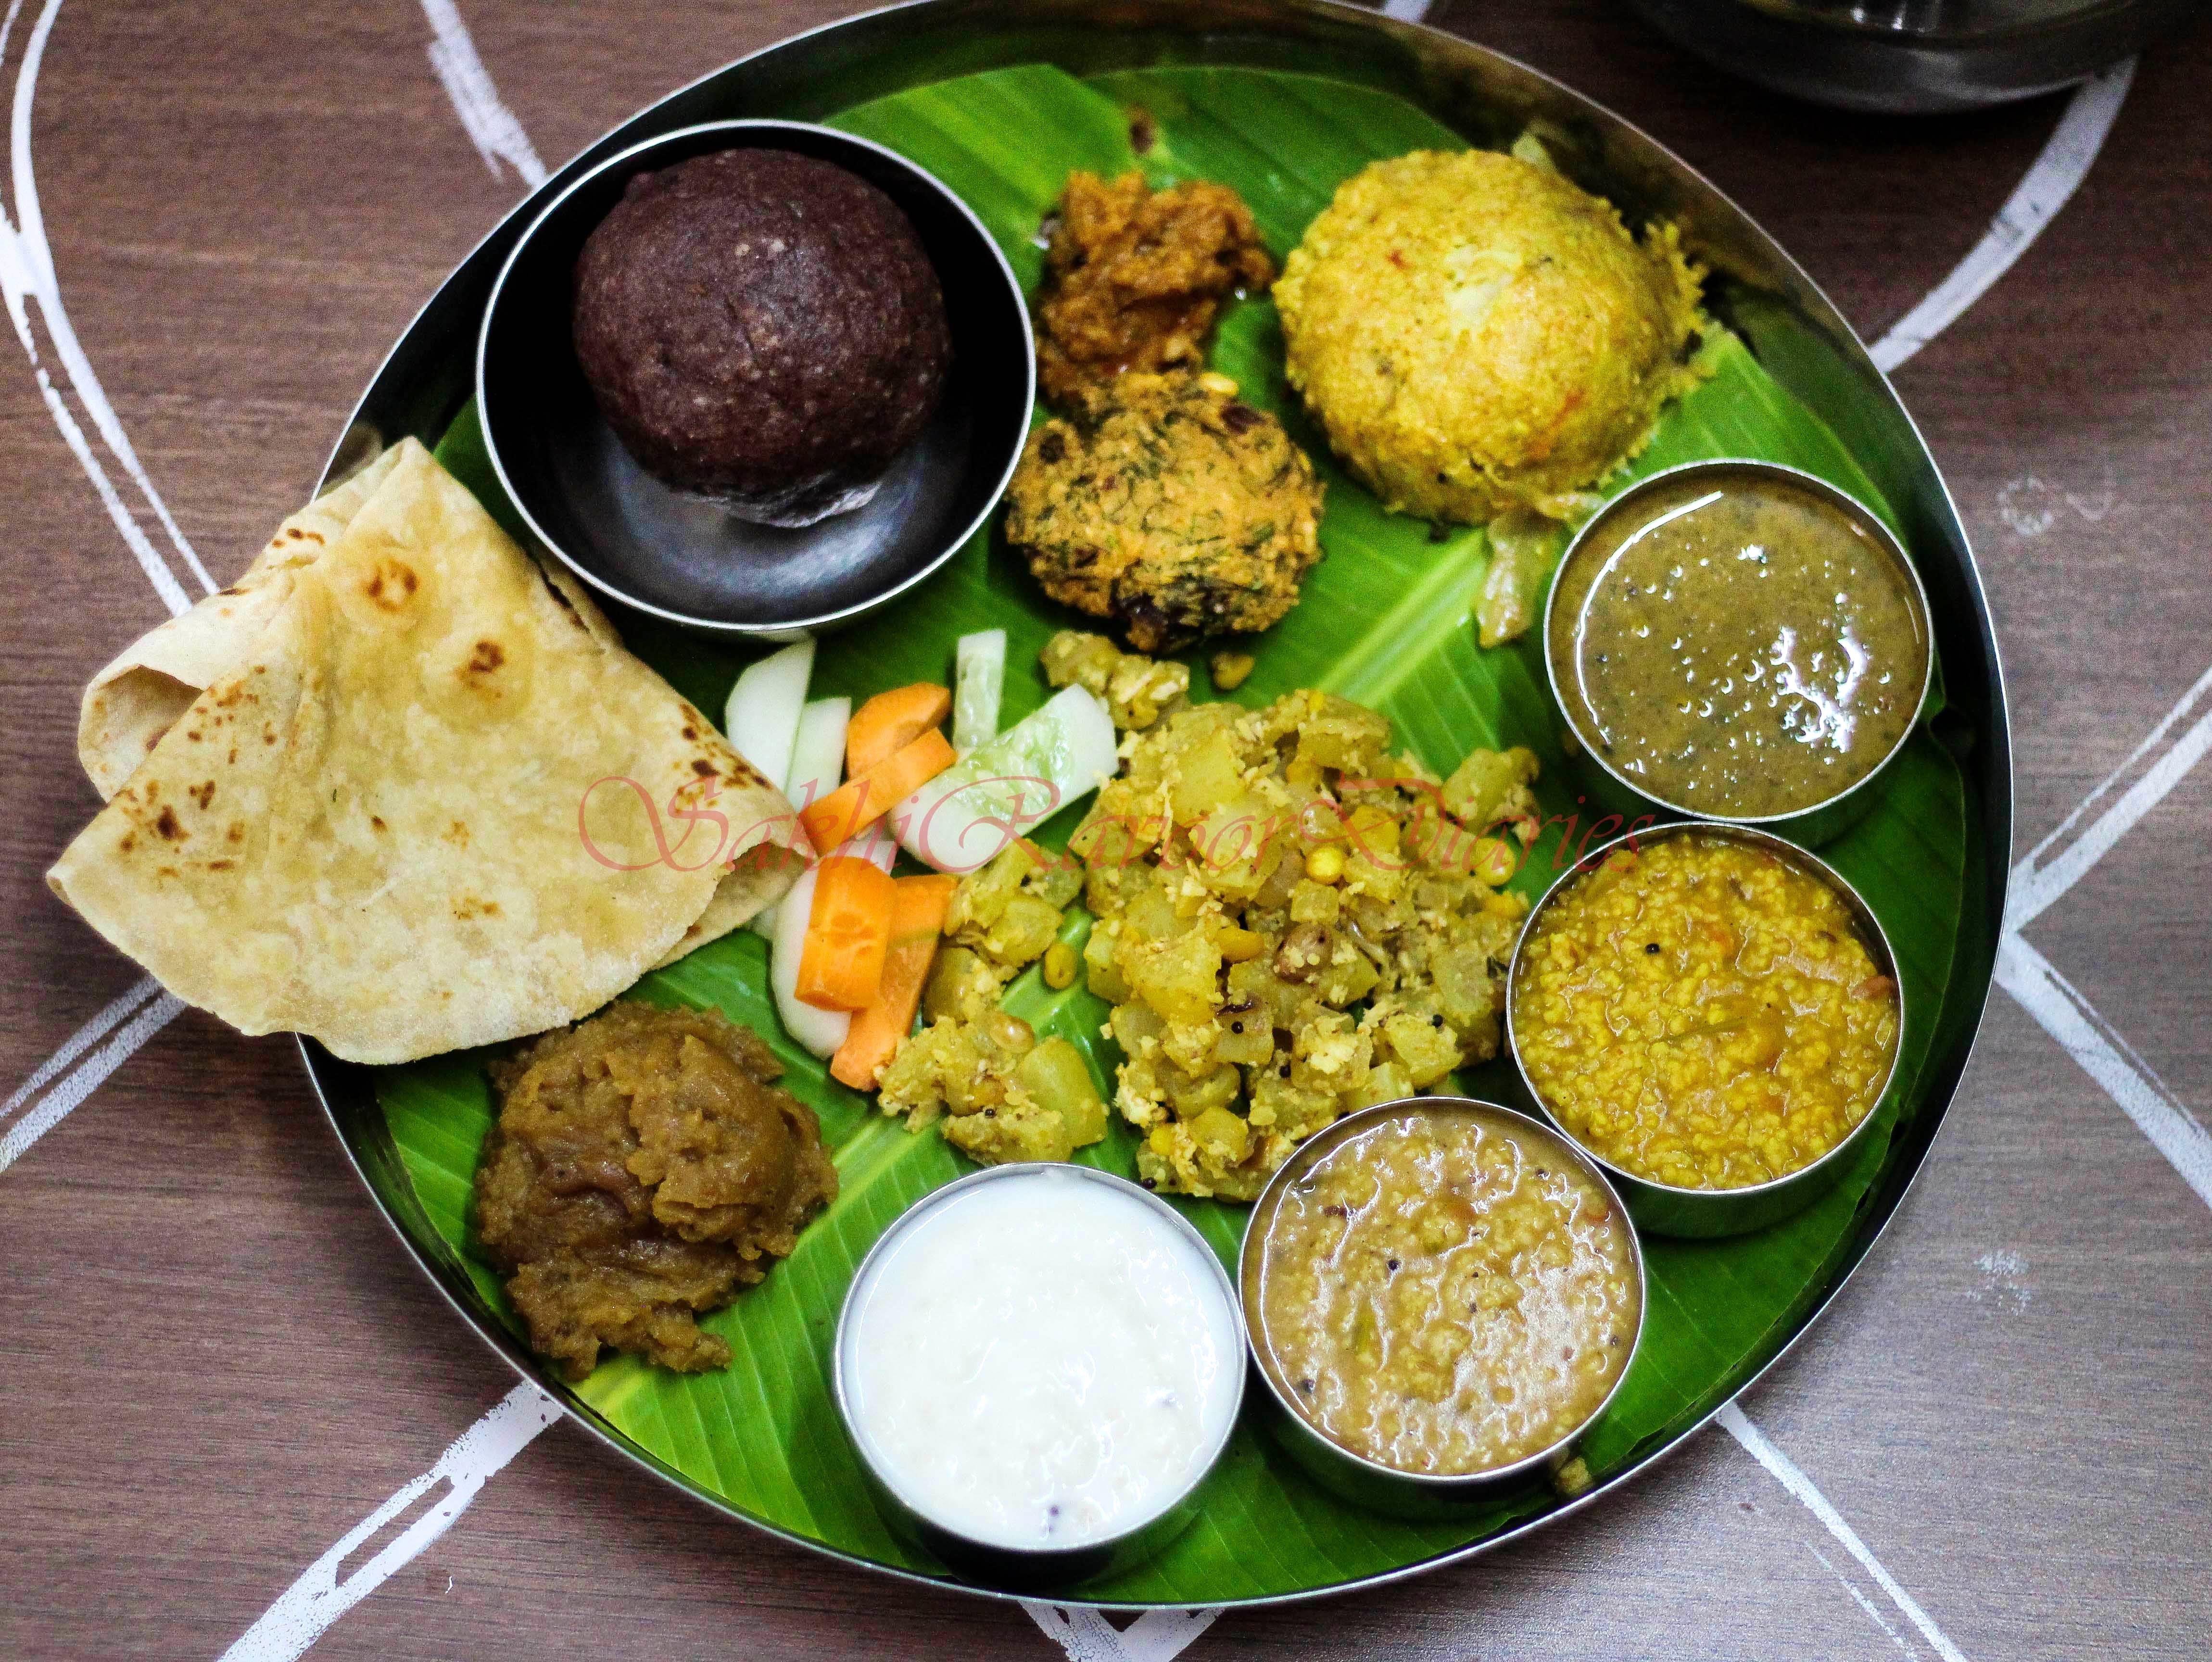 Dish,Food,Cuisine,Ingredient,Vegetarian food,Andhra food,Meal,Produce,Tamil food,Sindhi cuisine